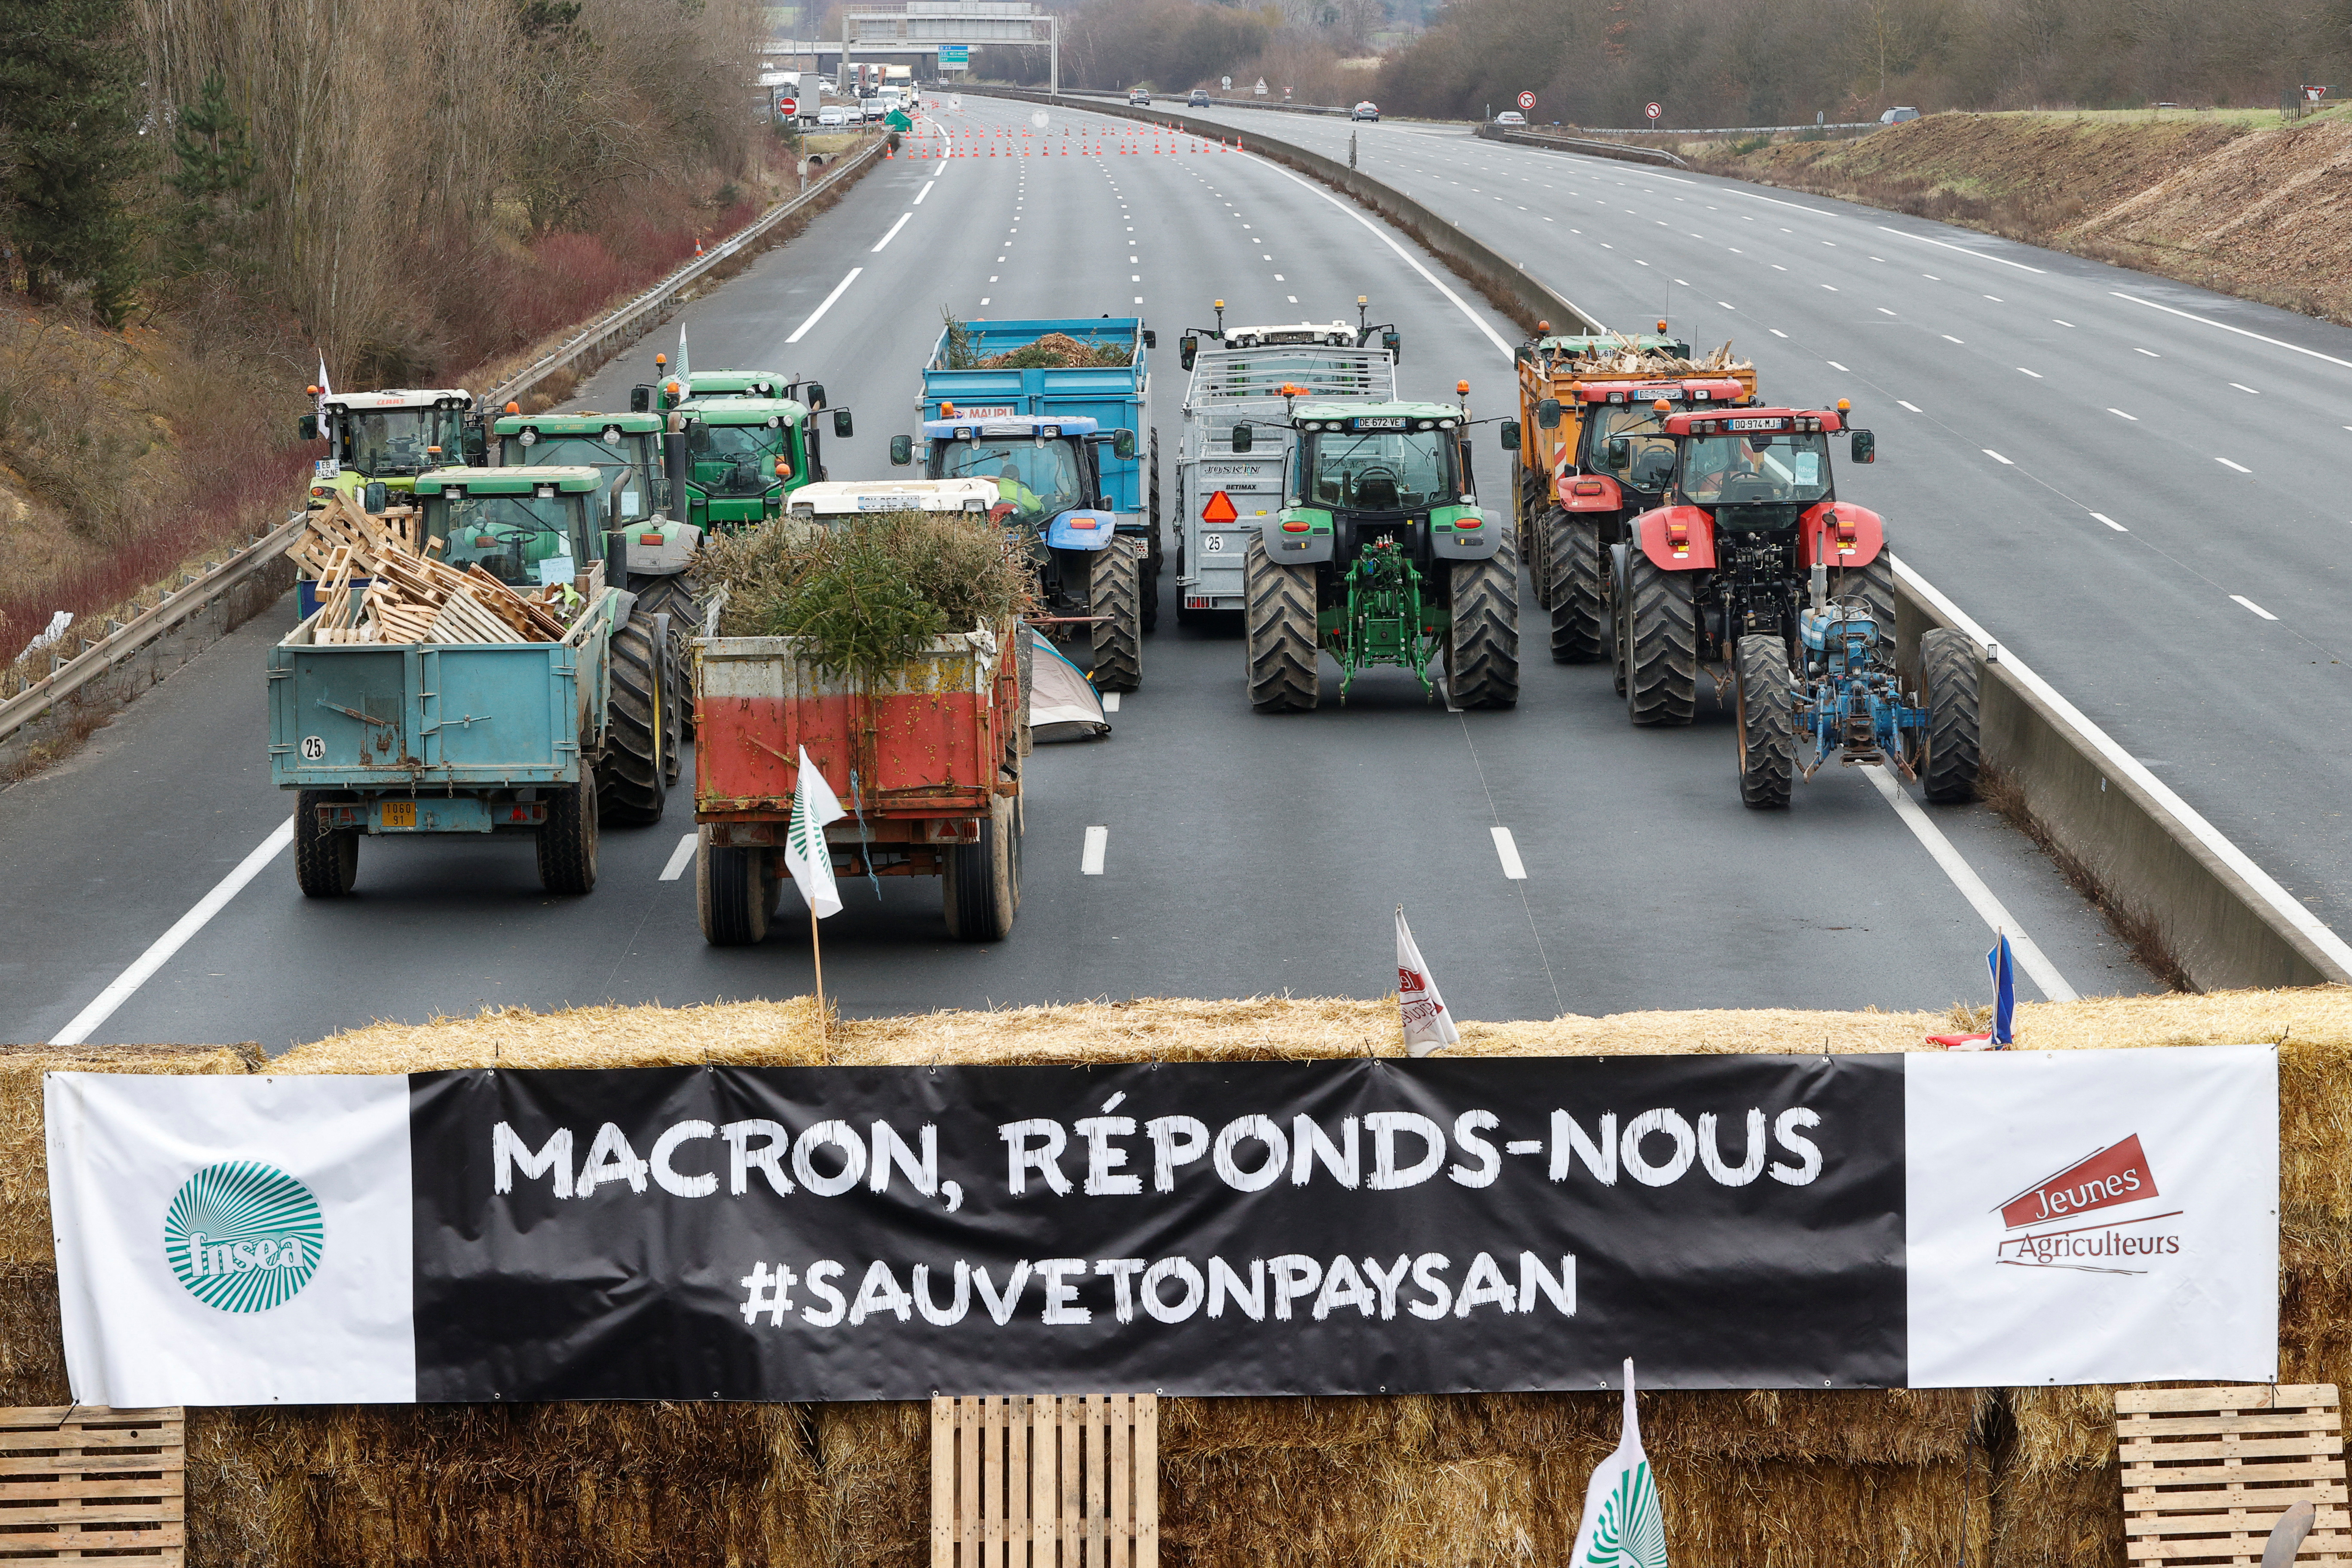 Protestas campesinas a nivel nacional en Francia